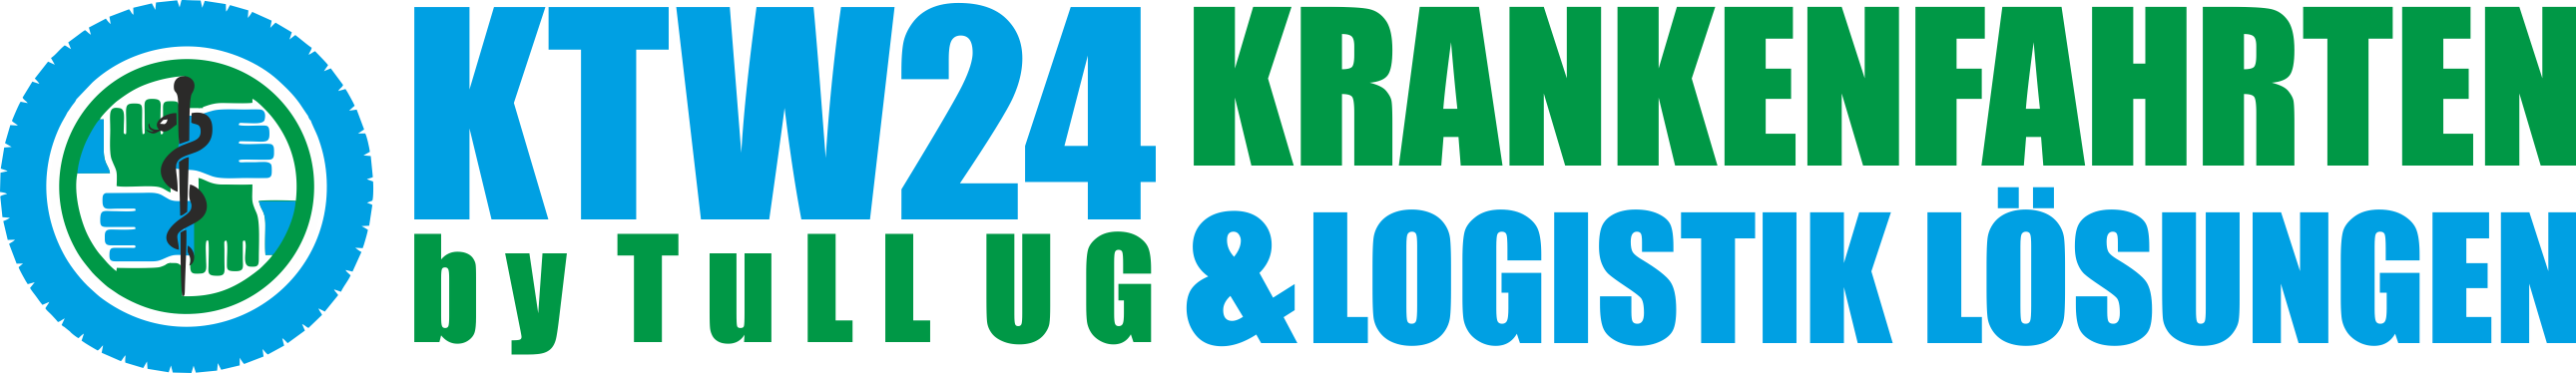 ktw24-logo